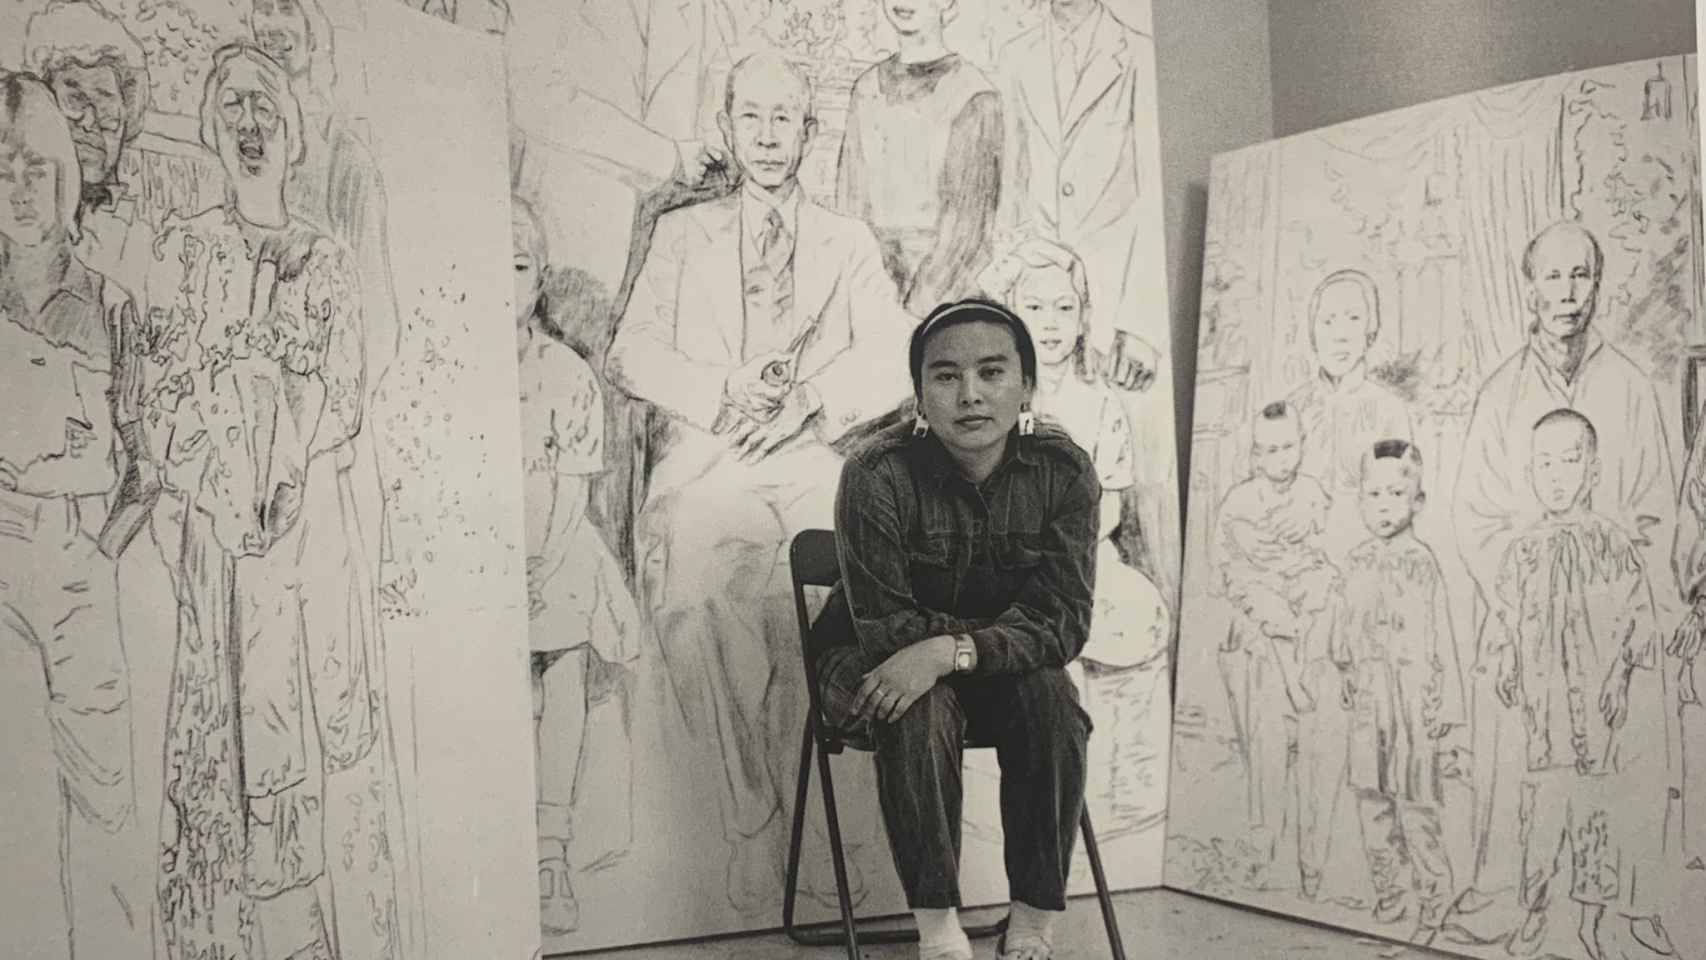 Hung Liu durante su residencia artística en Capp Street Project, San Francisco, 1988.